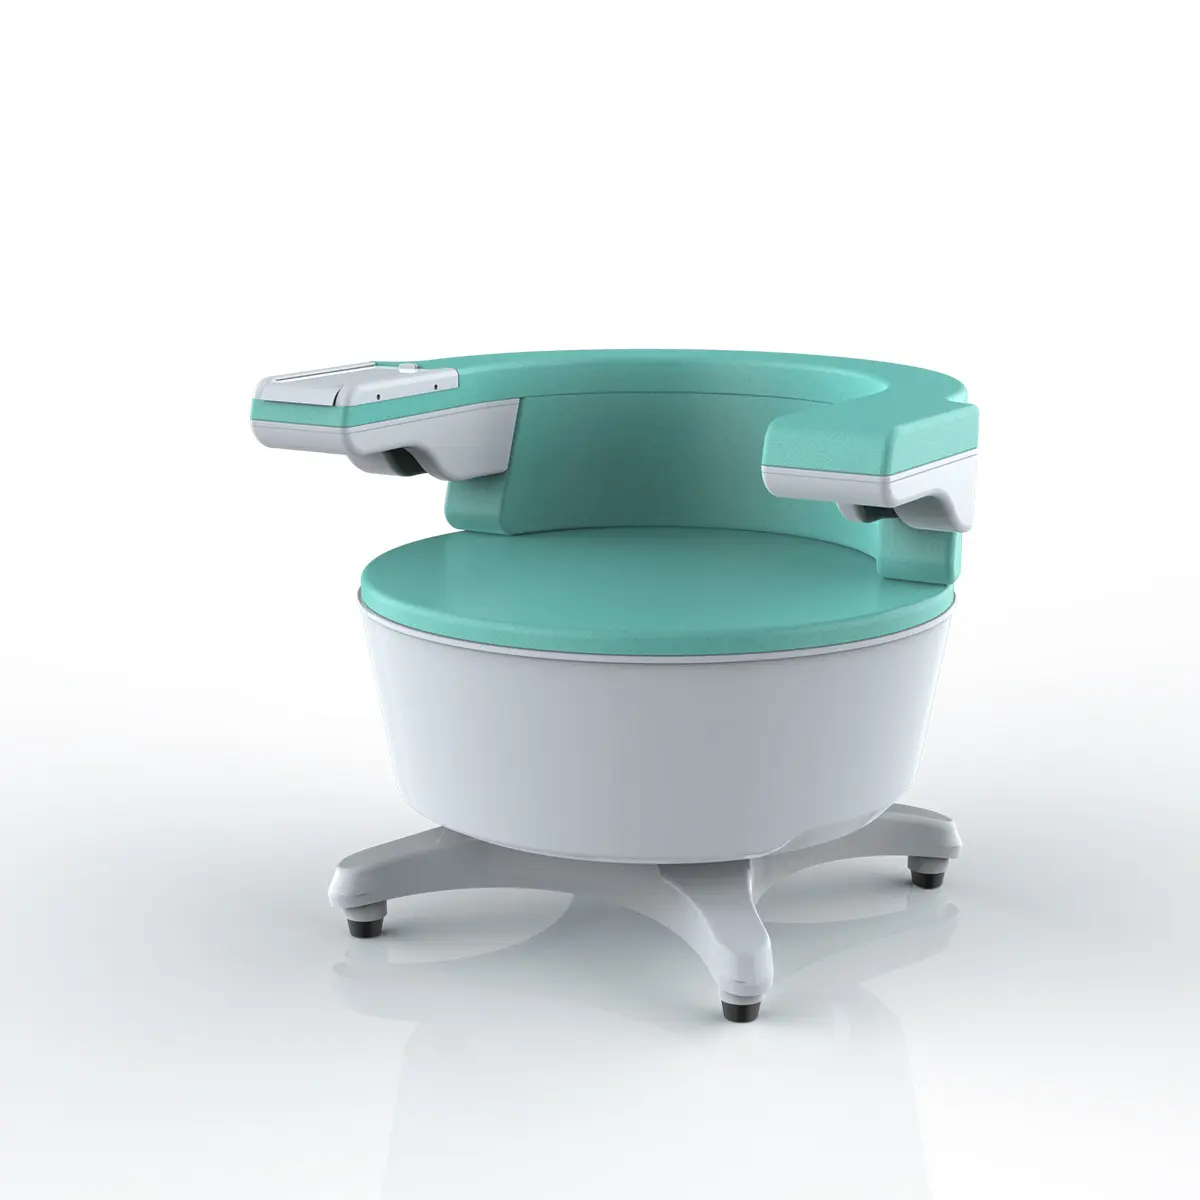 2023 Ems骨盤底椅子は尿失禁筋肉増強臀部リフト骨盤底マッスルマシンを復元します